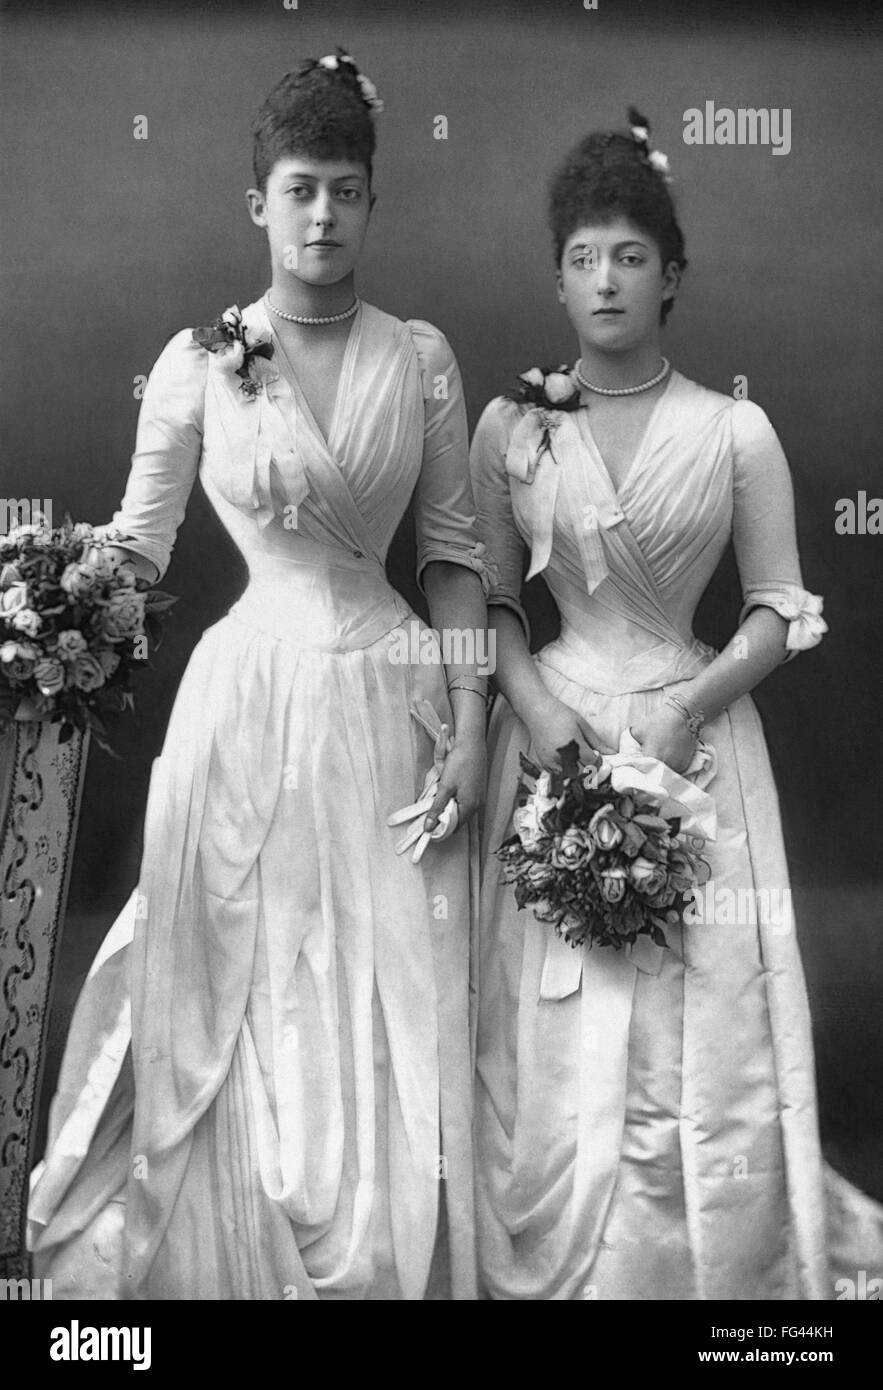 Princesas de Gales, c1890. /NPrincess Victoria y la Princesa Maud de Gales, la futura reina de Noruega. Fotografía por W. & D. Downey, c1890. Foto de stock